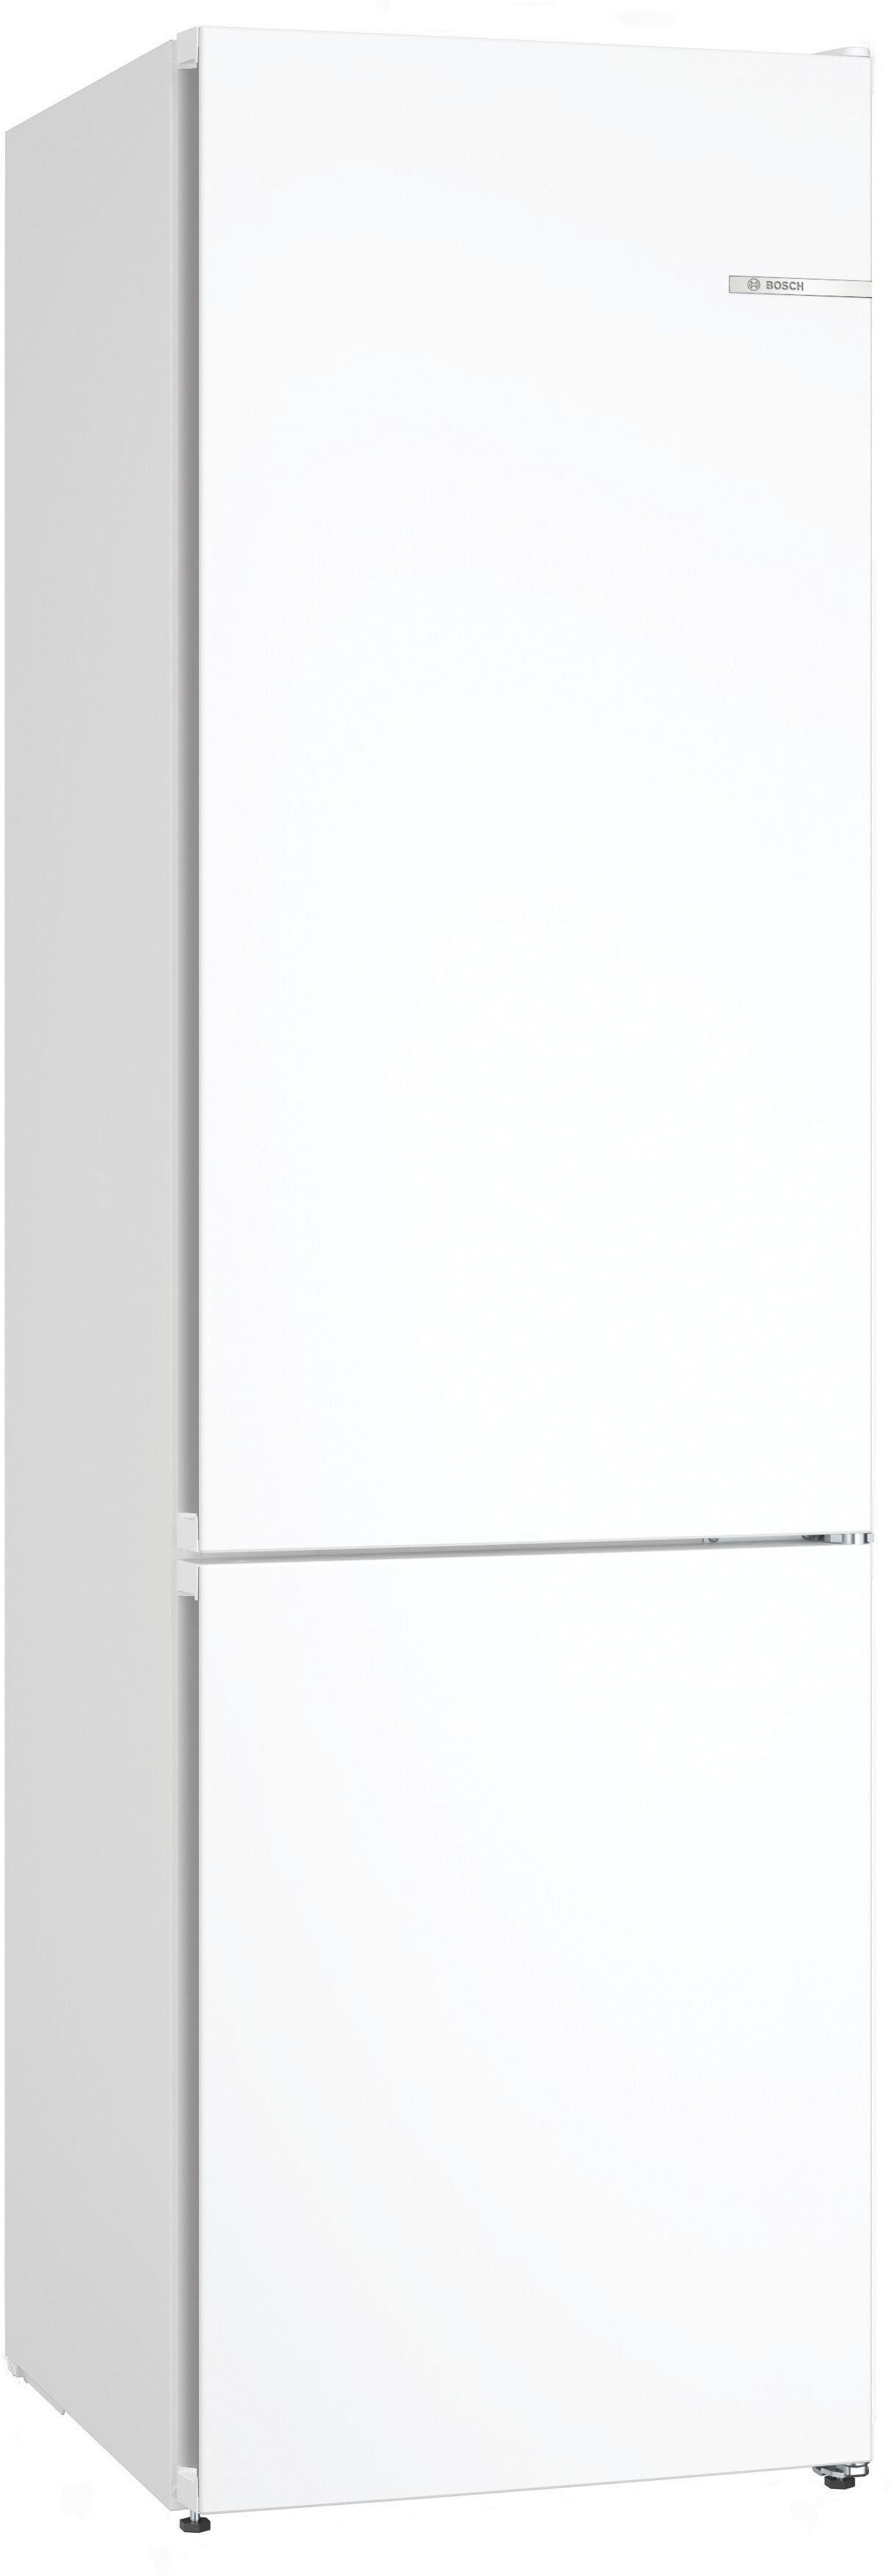 BOSCH Kühl-/Gefrierkombination KGN392WCF, 203 cm hoch, 60 cm breit weiß